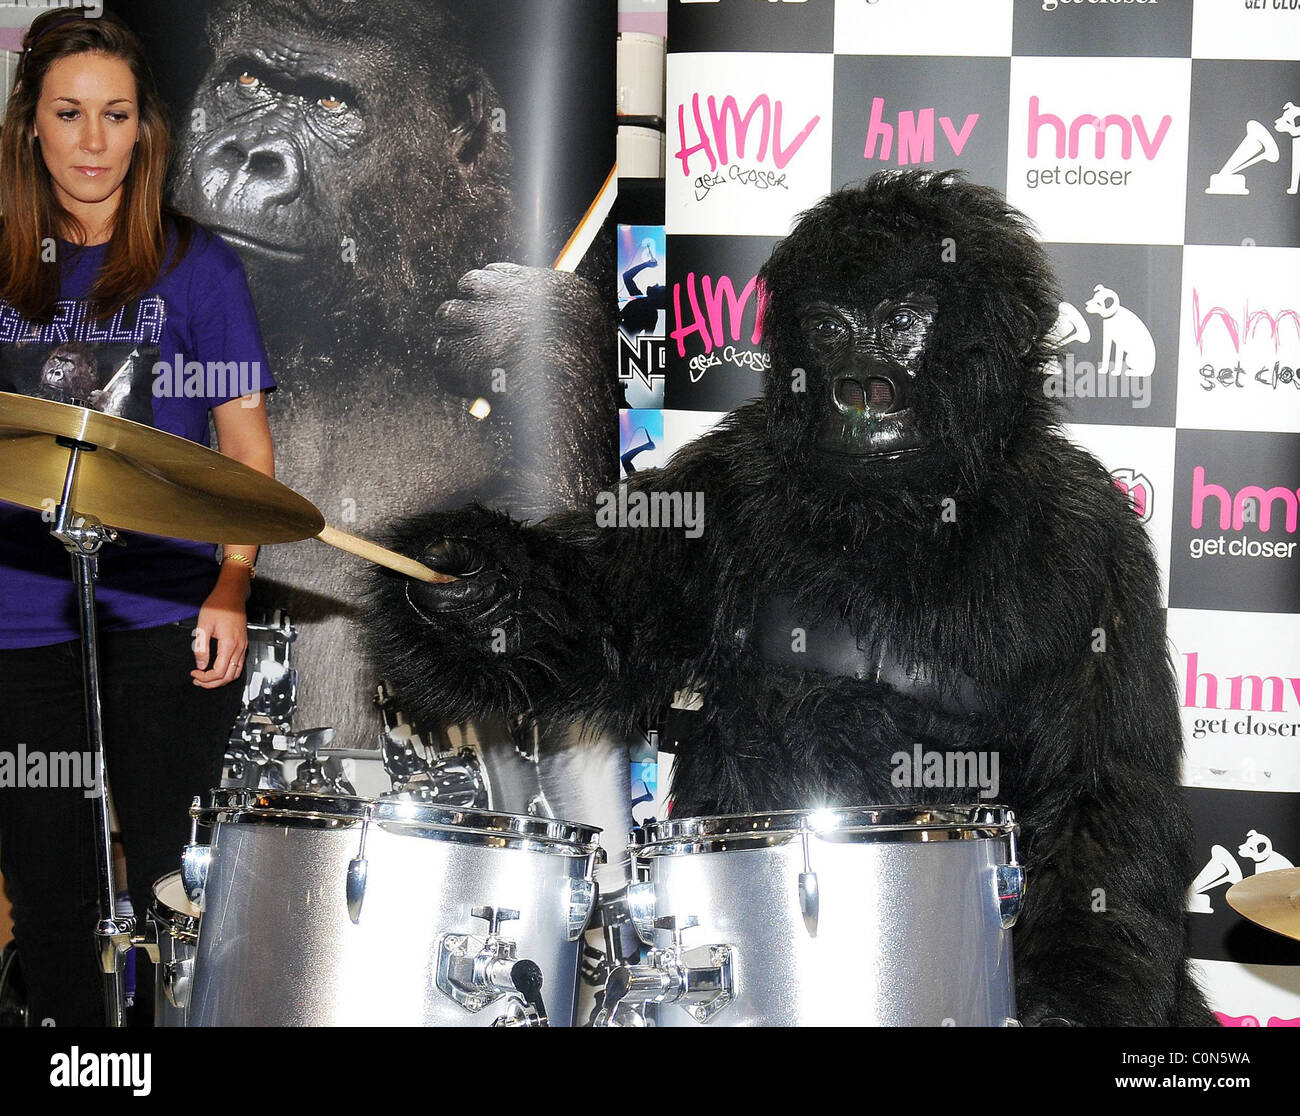 Cadbury Drumming Gorilla aus der Cadbury TV-Werbespot mit dem Bonnie  Tyler-Song "Total Eclipse of the Heart" Dublin Stockfotografie - Alamy